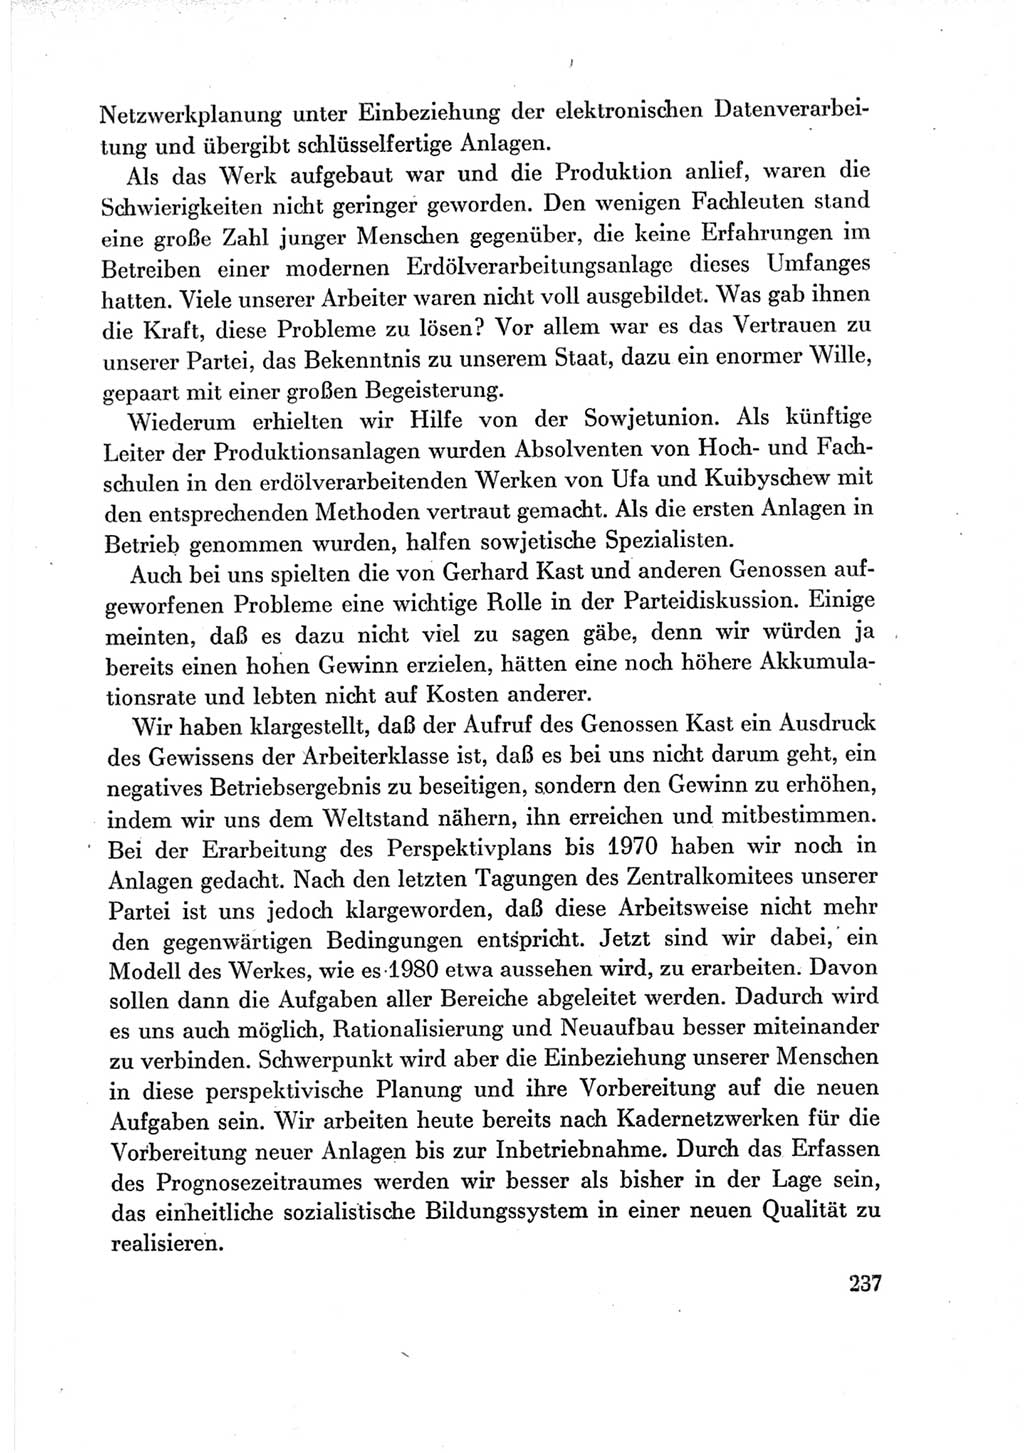 Protokoll der Verhandlungen des Ⅶ. Parteitages der Sozialistischen Einheitspartei Deutschlands (SED) [Deutsche Demokratische Republik (DDR)] 1967, Band Ⅲ, Seite 237 (Prot. Verh. Ⅶ. PT SED DDR 1967, Bd. Ⅲ, S. 237)